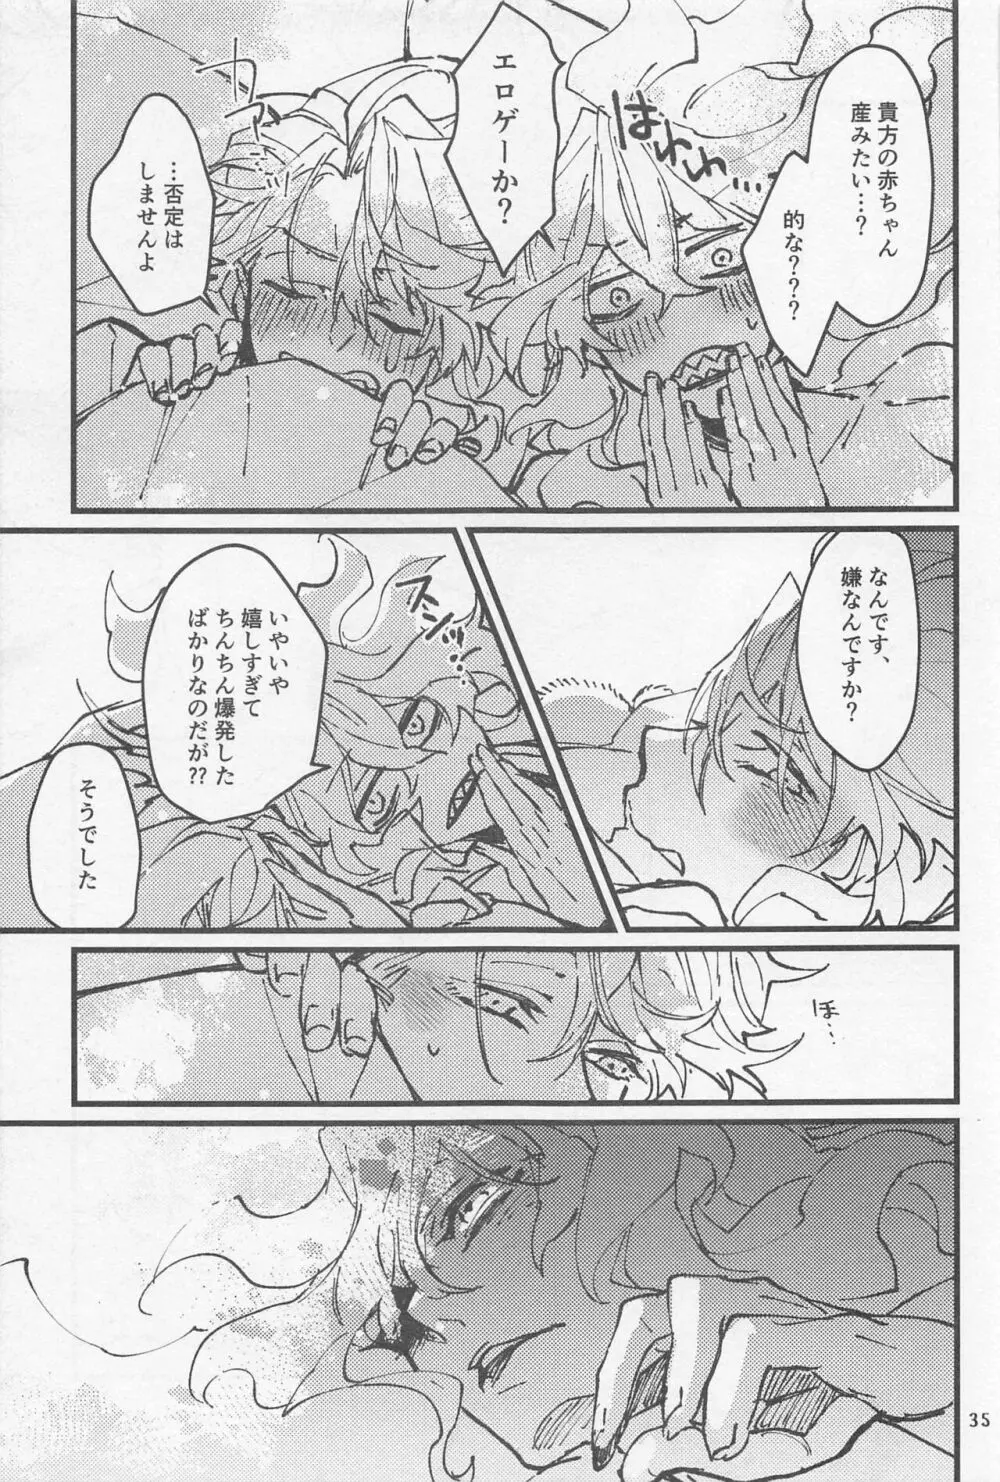 シンソウ夜話 #2 - page34